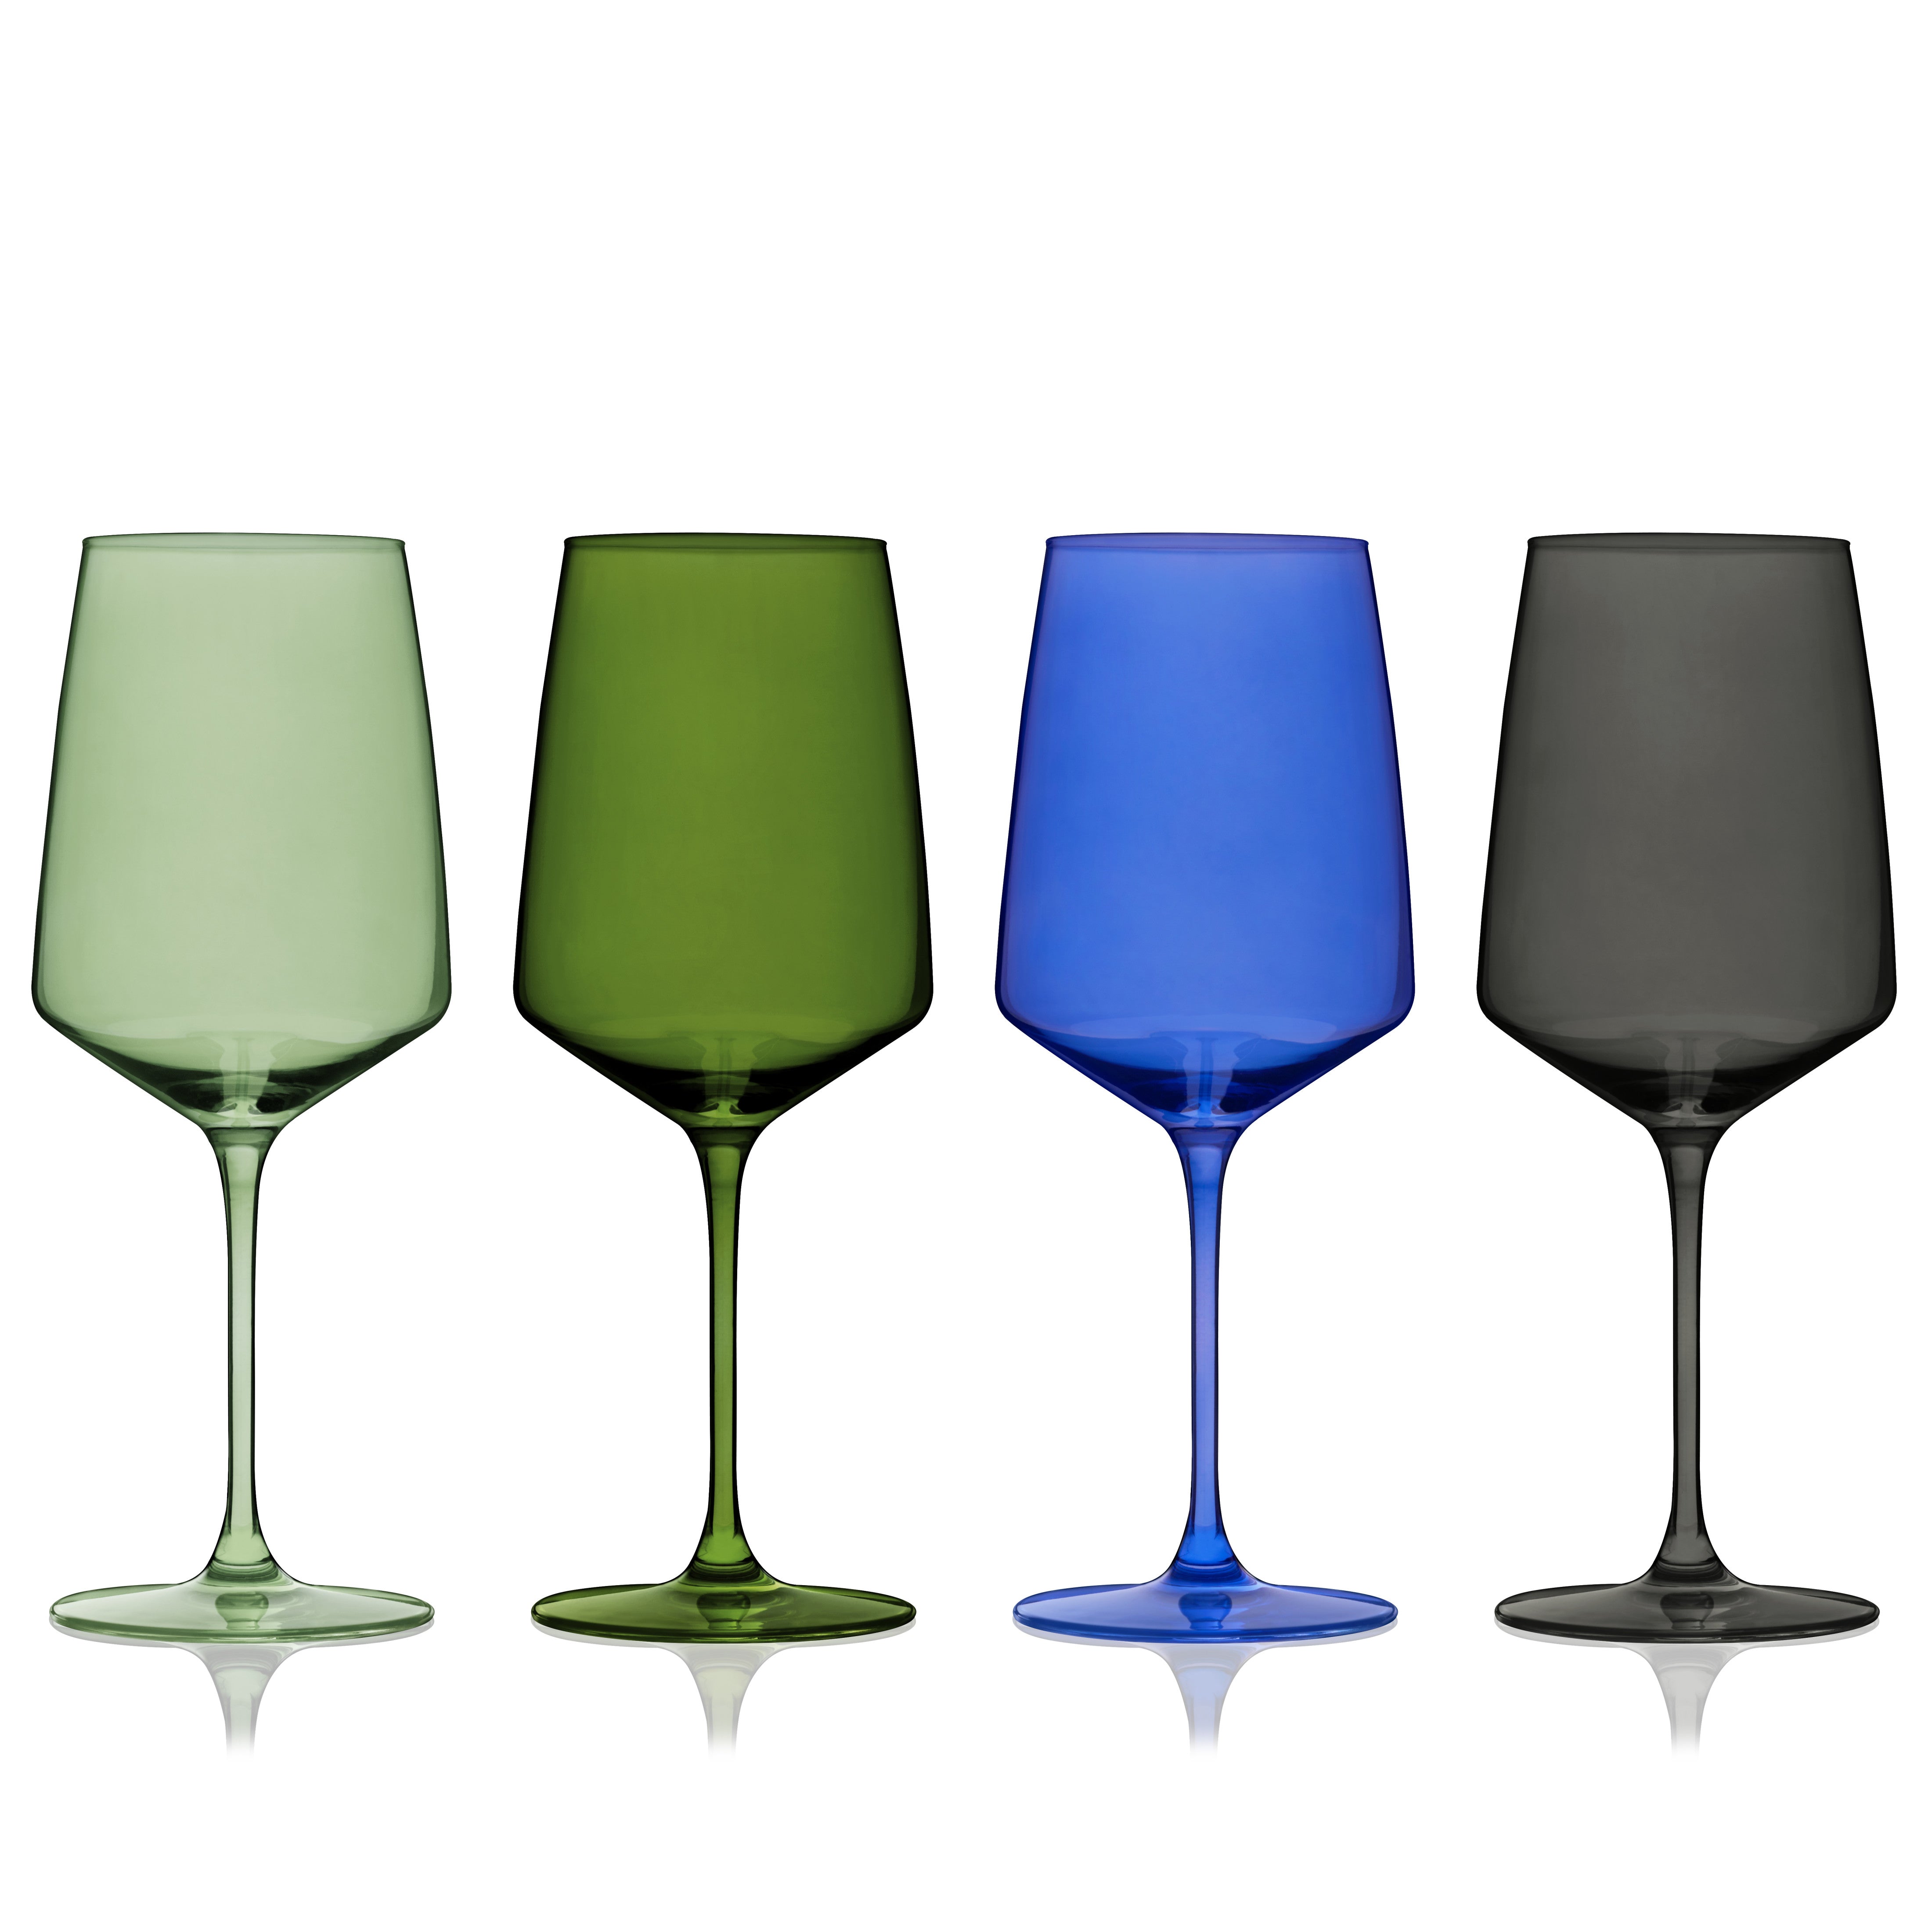 Crystal Martini Glasses Colored - Set of 4 - Stemmed Multi-Color